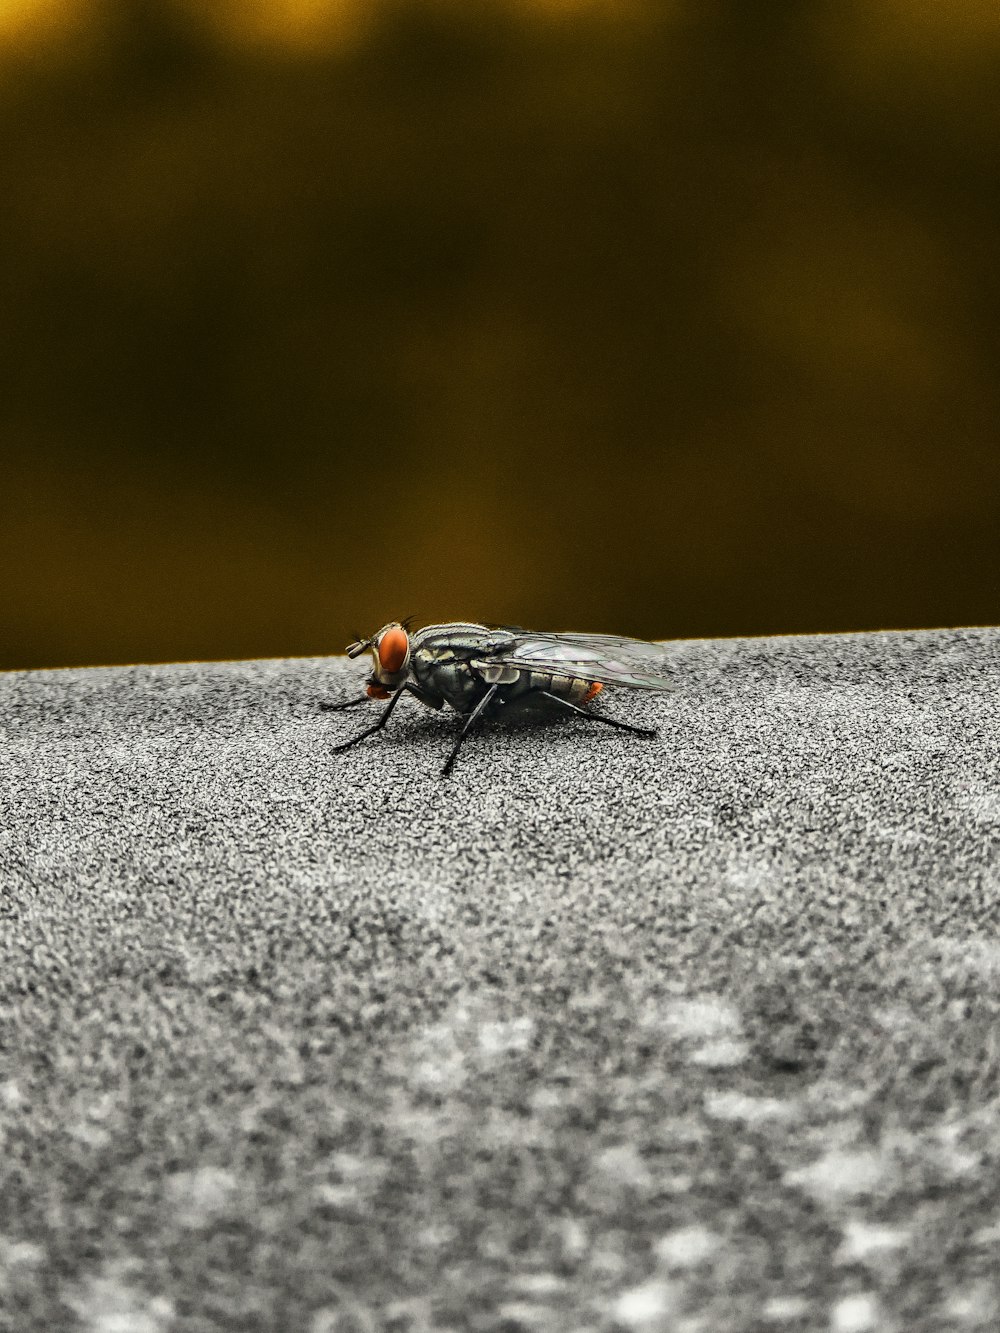 mouche noire sur une surface de béton gris en gros plan pendant la journée